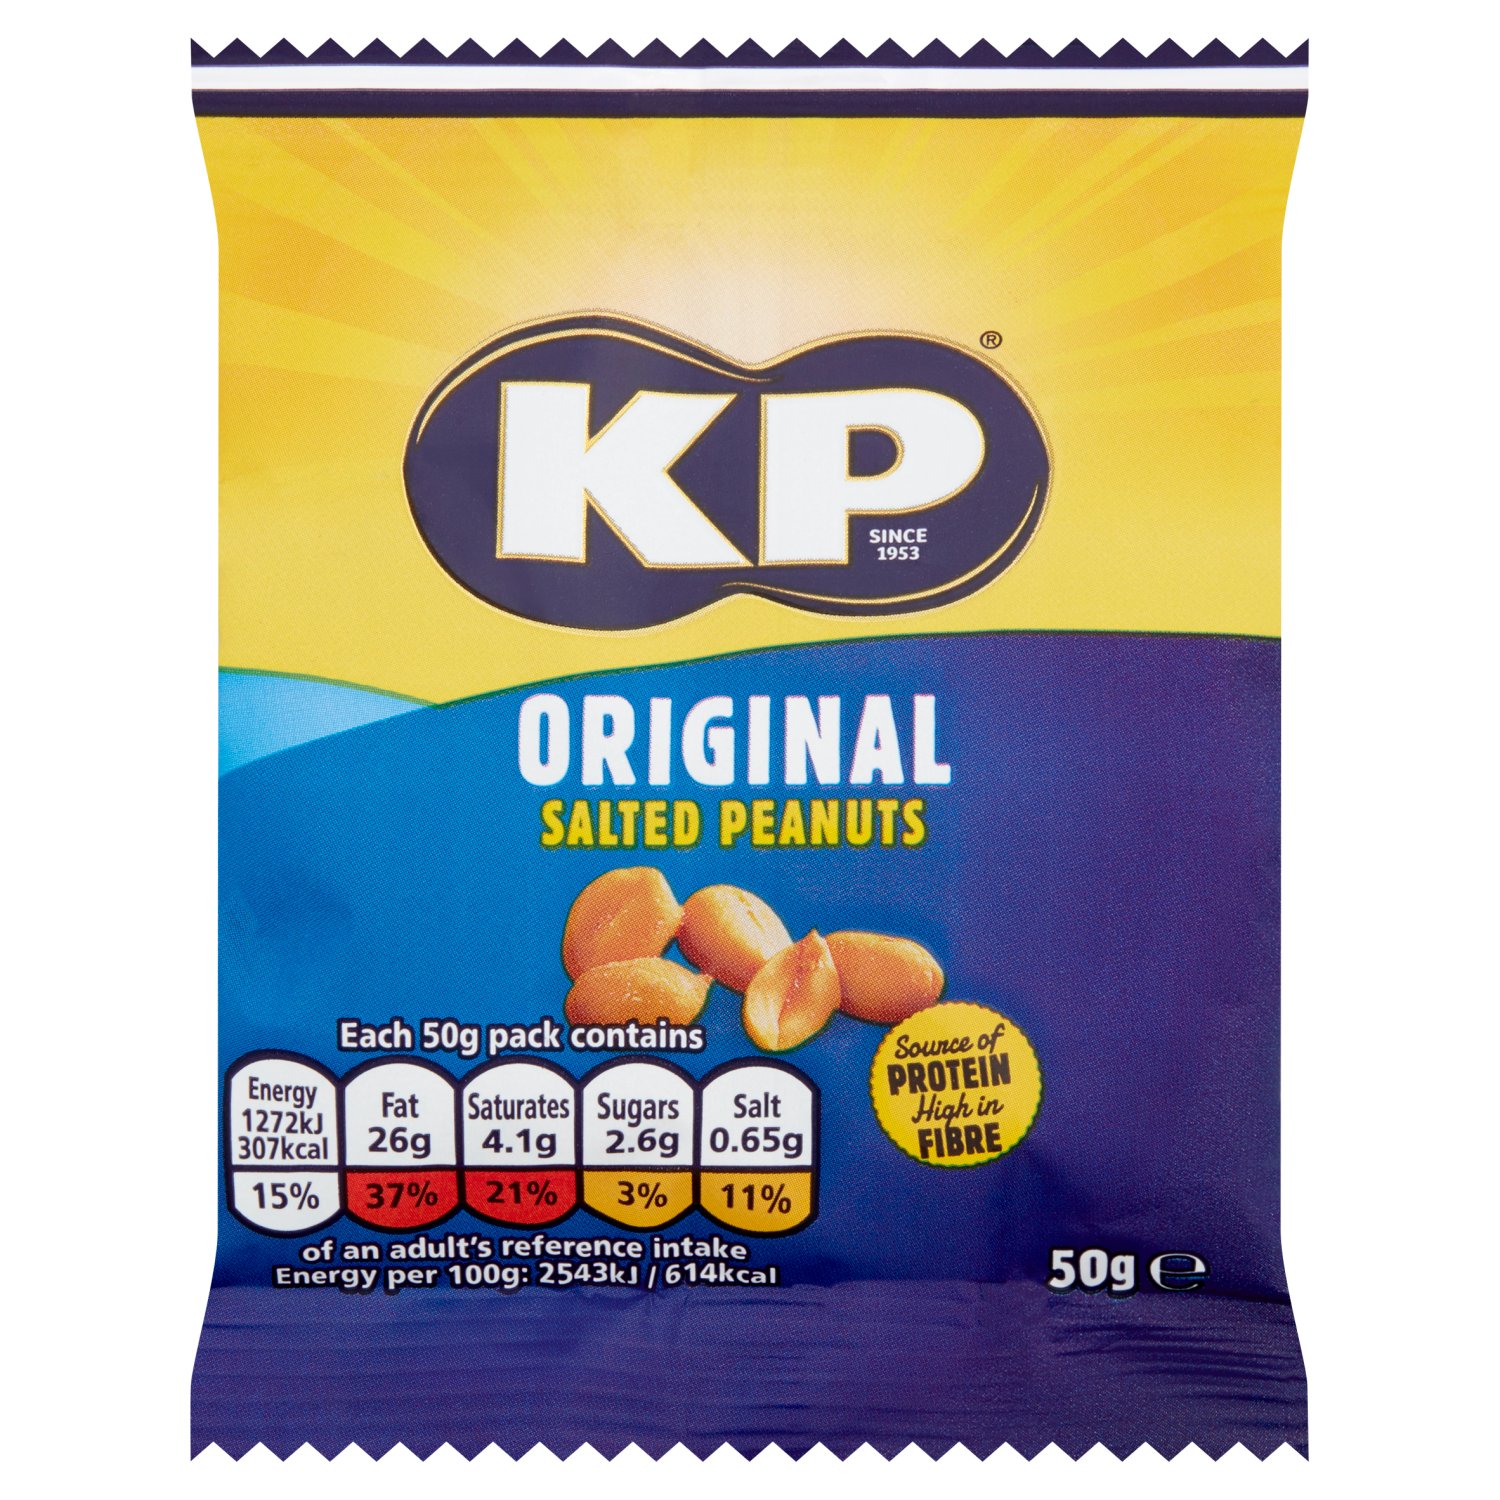 KP Origional Salted Peanuts Bag (50 g)